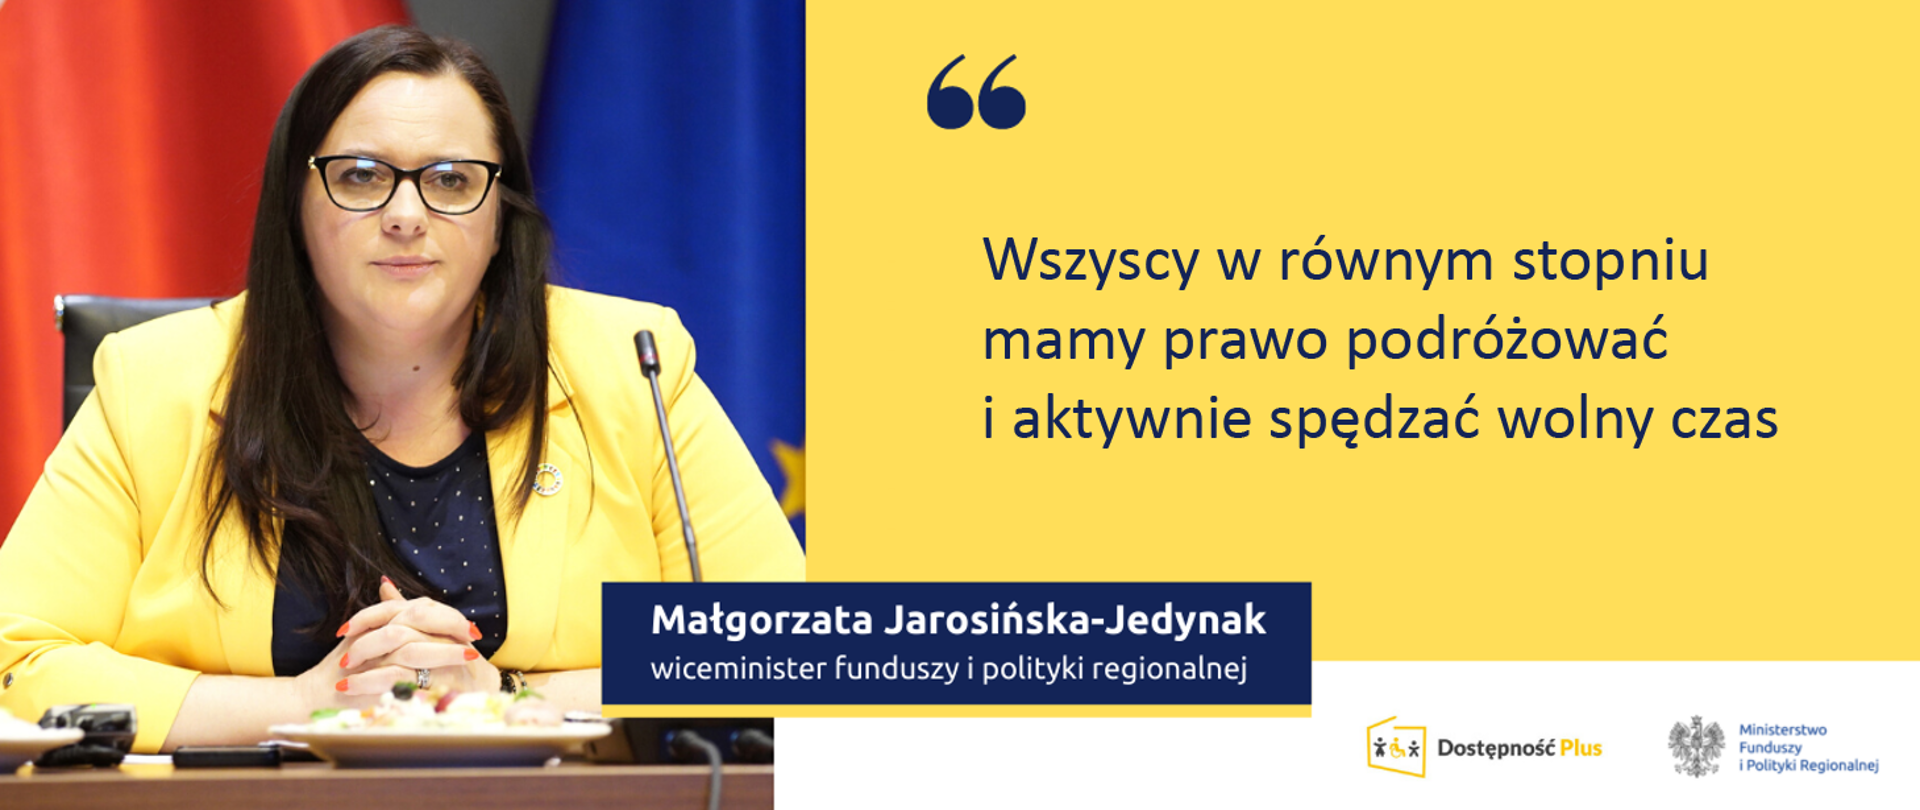 Cytat wiceminister Małgorzaty Jarosińskiej-Jedynak: "Wszyscy w równym stopniu mamy prawo podróżować i aktywnie spędzać wolny czas"